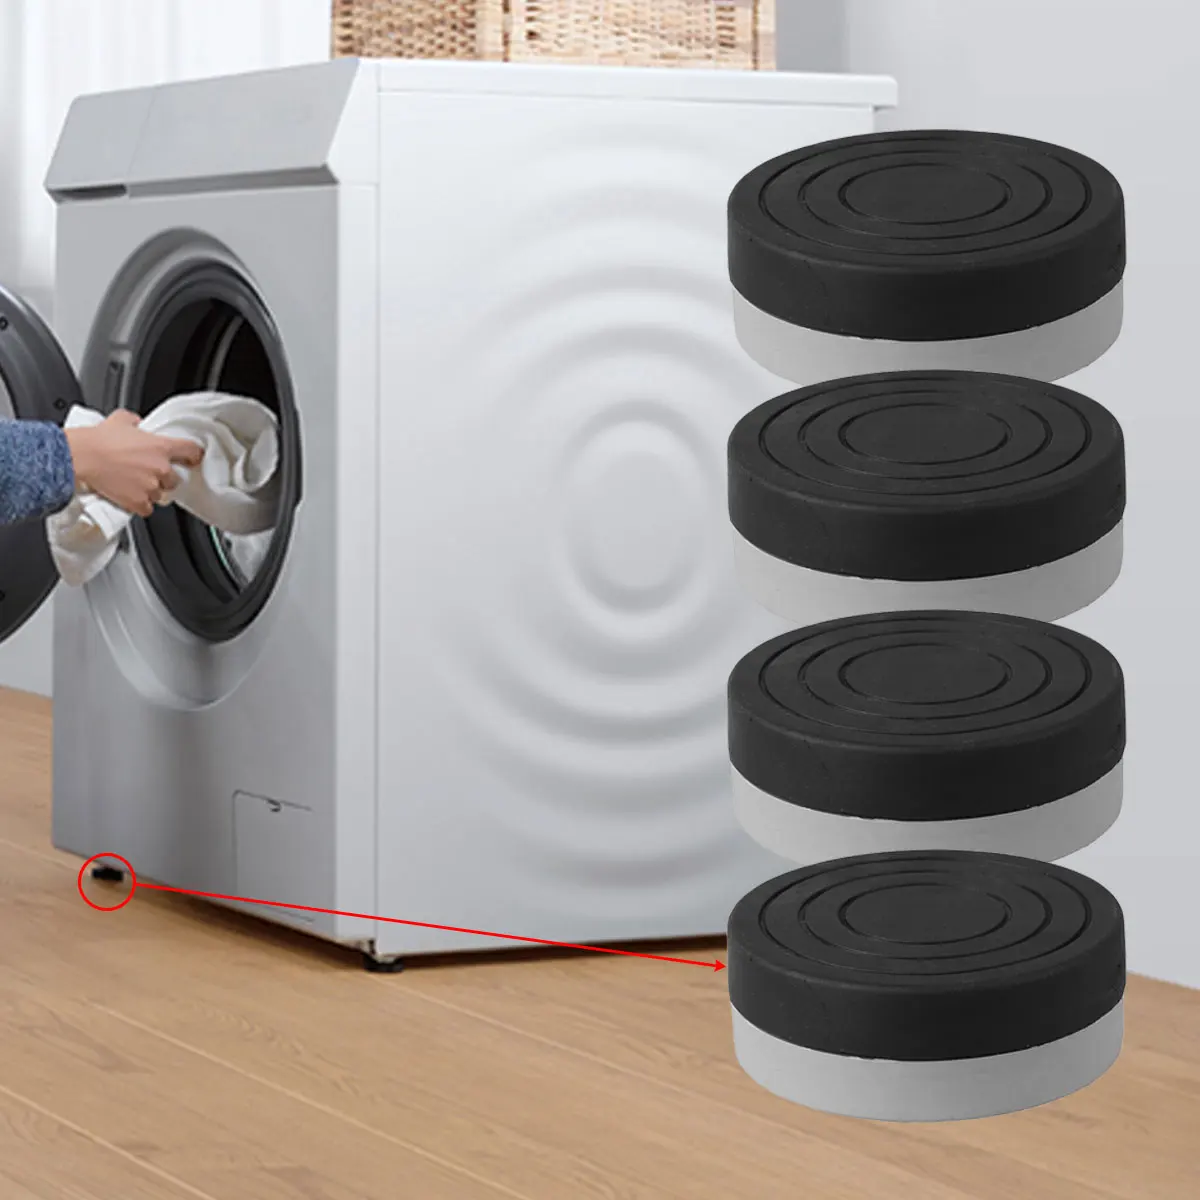 4pcs Washing Machine Anti Vibration Pads Heavy Duty Washer Dryer